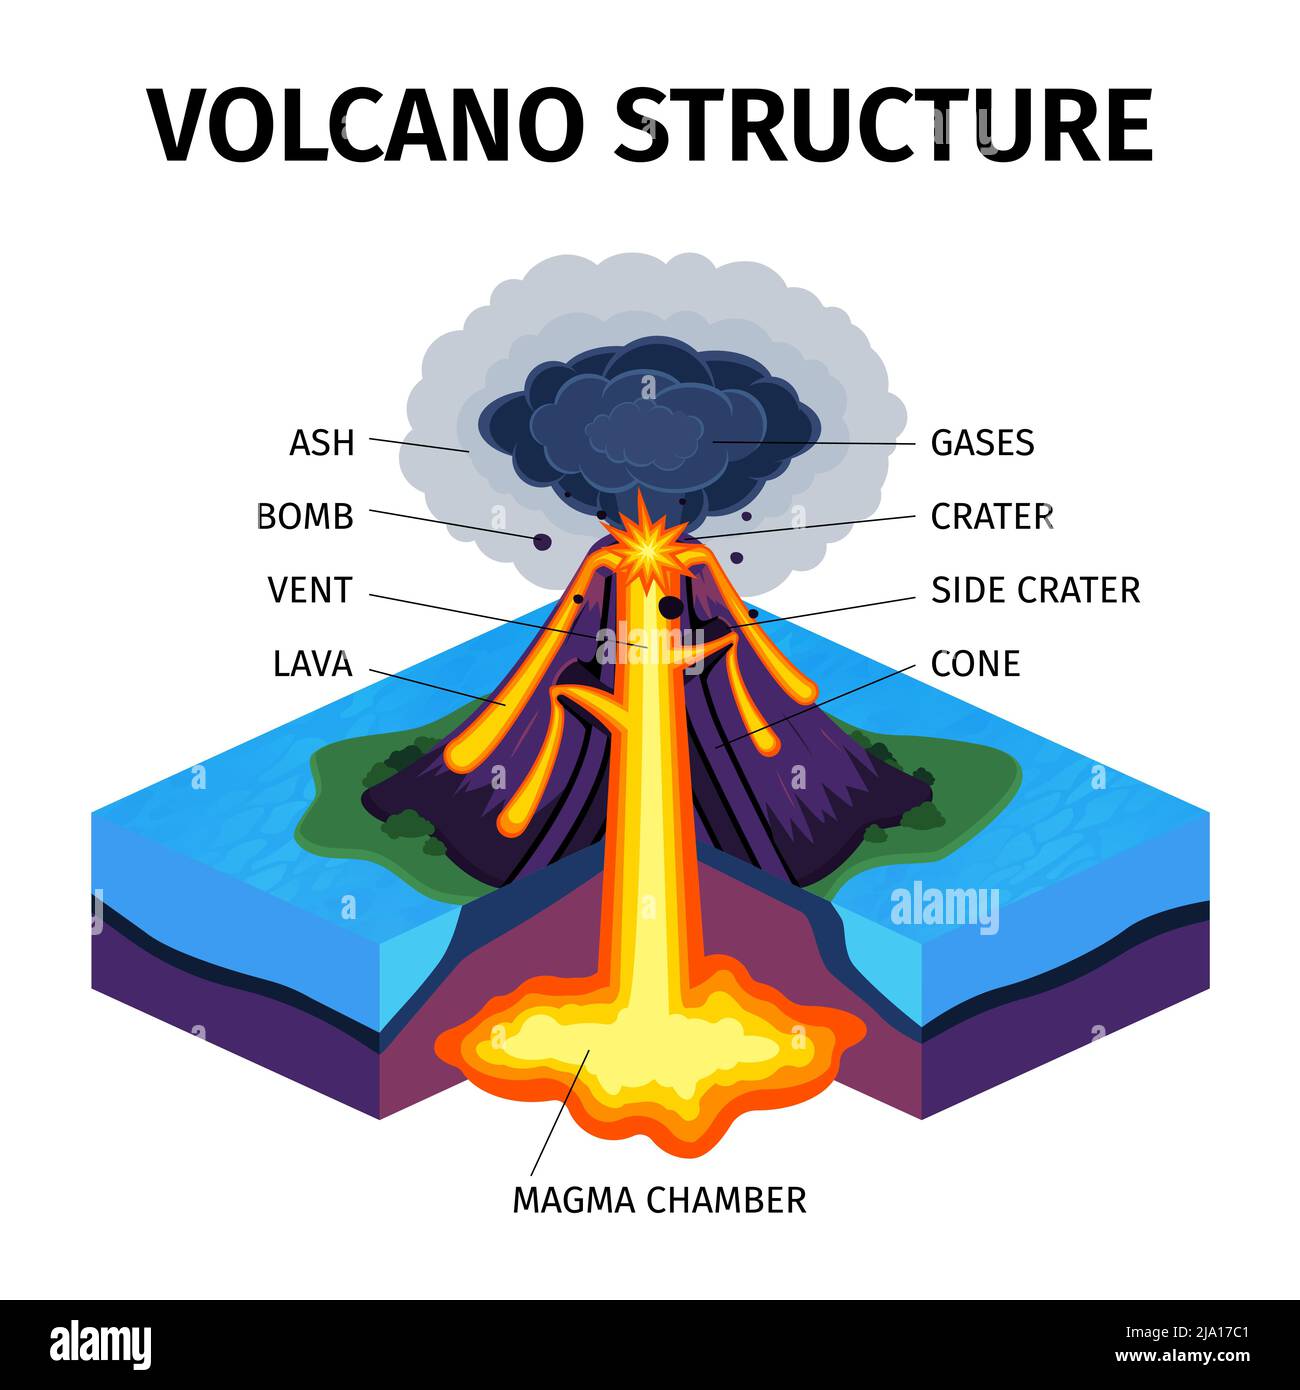 Querschnitt des isometrischen Diagramms des Vulkans mit Angabe der Magmakammergase Kegelstausenkrater Lavabombe Aschevektordarstellung Stock Vektor